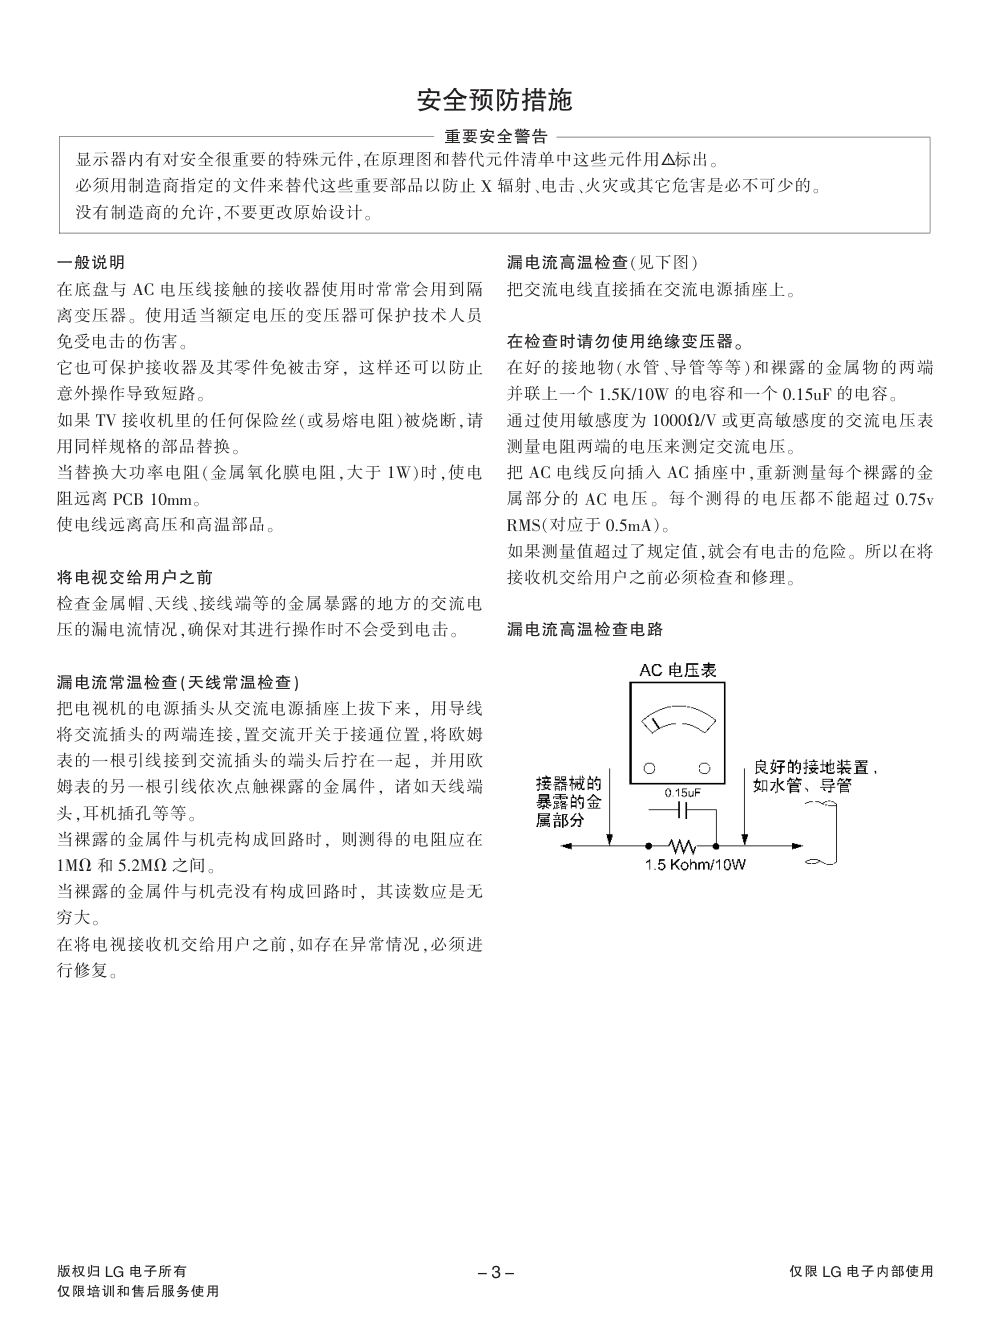 LG 32LG30R液晶电视维修手册和原理图-2